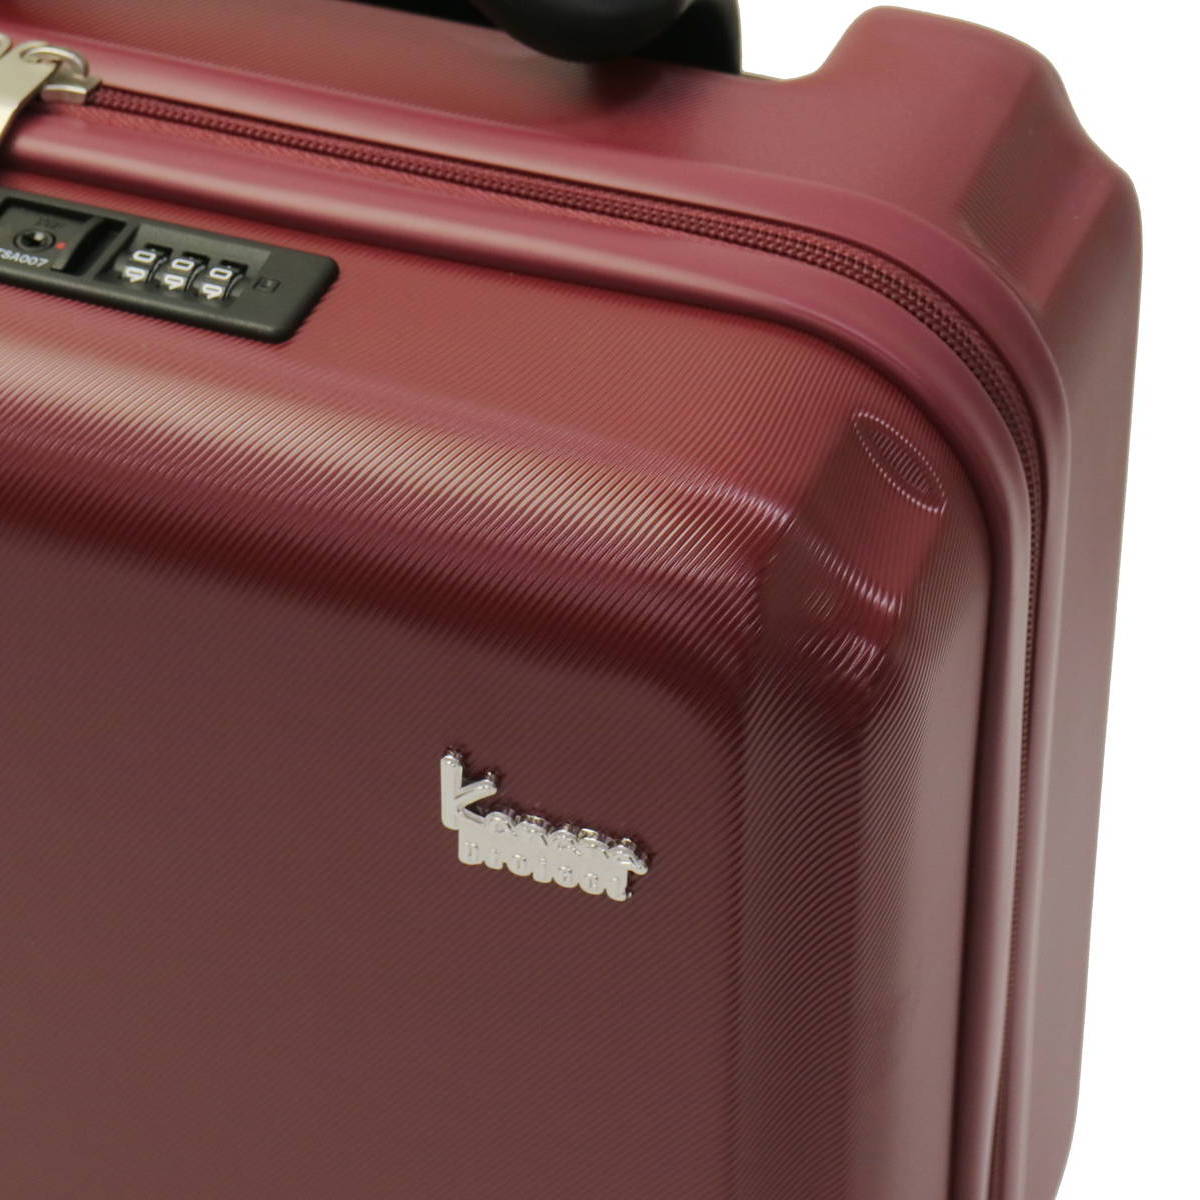 Kanana project カナナプロジェクト カナナハードトローリー PJ-12 機内持ち込み対応スーツケース 18L 05878